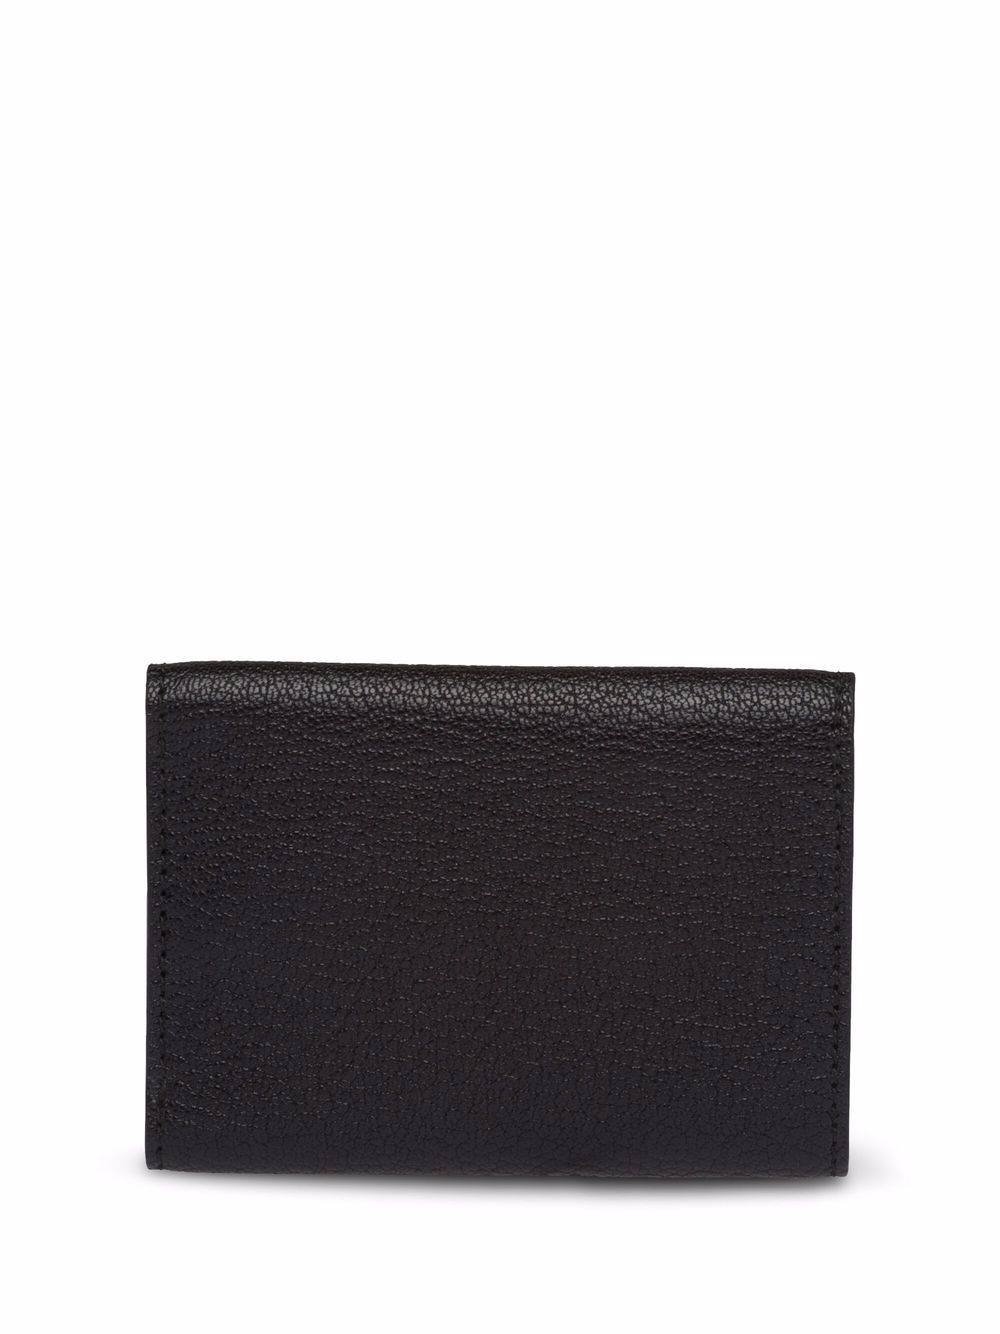 Miu Miu Madras Leather Small Wallet - Farfetch